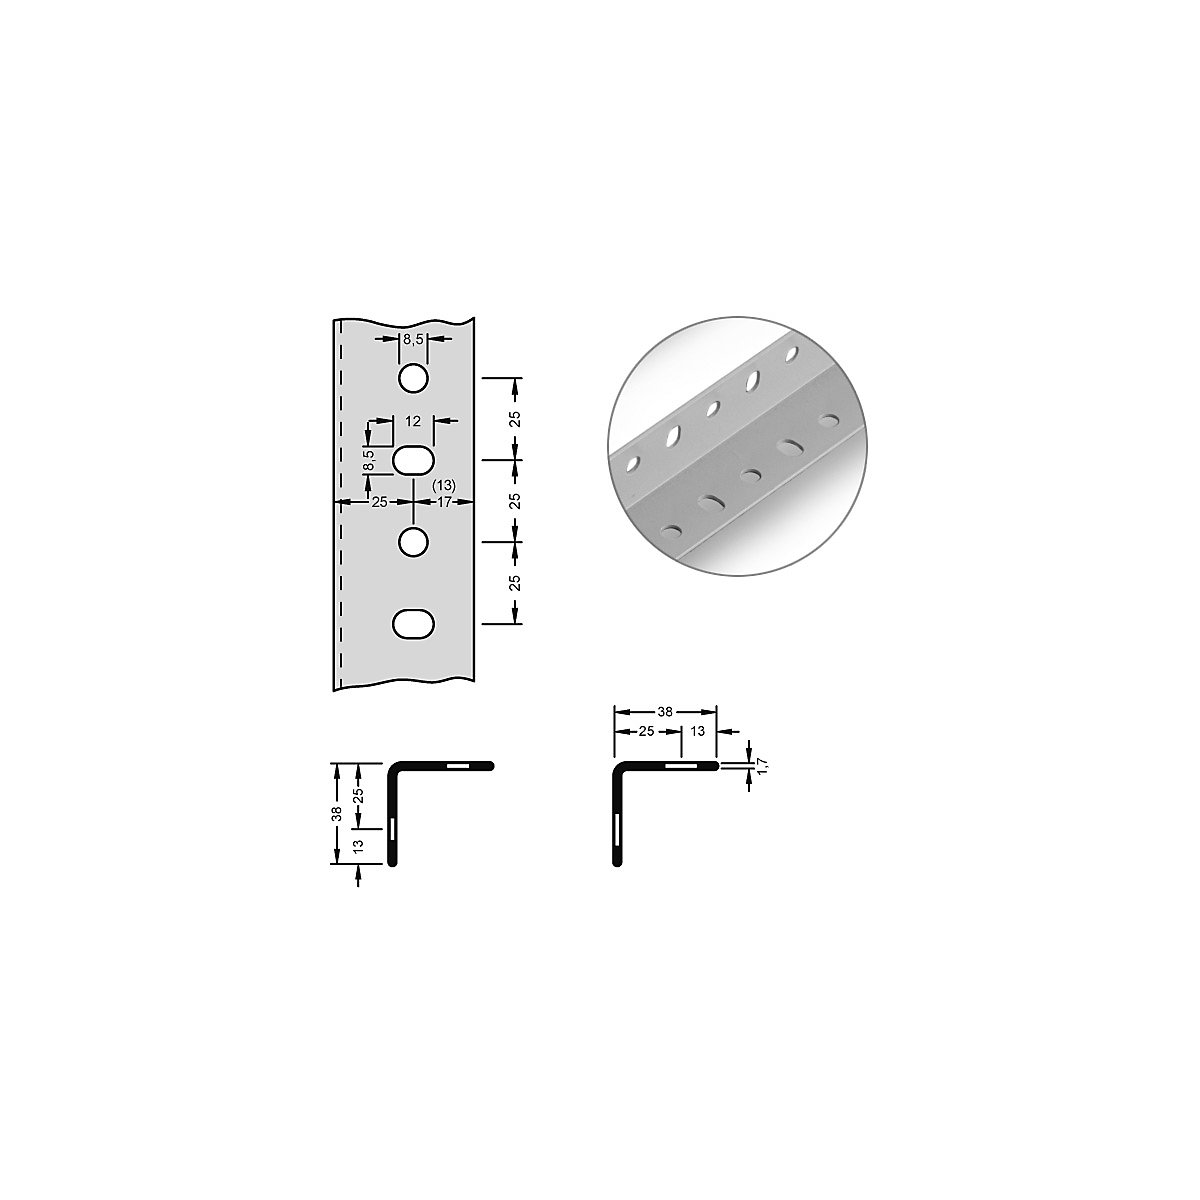 hofe – Stalowy profil narożny do systemu modułowego, 38 x 38 x 1,7 mm, dł. 3 m, jasnoszary, opak. 10 szt.